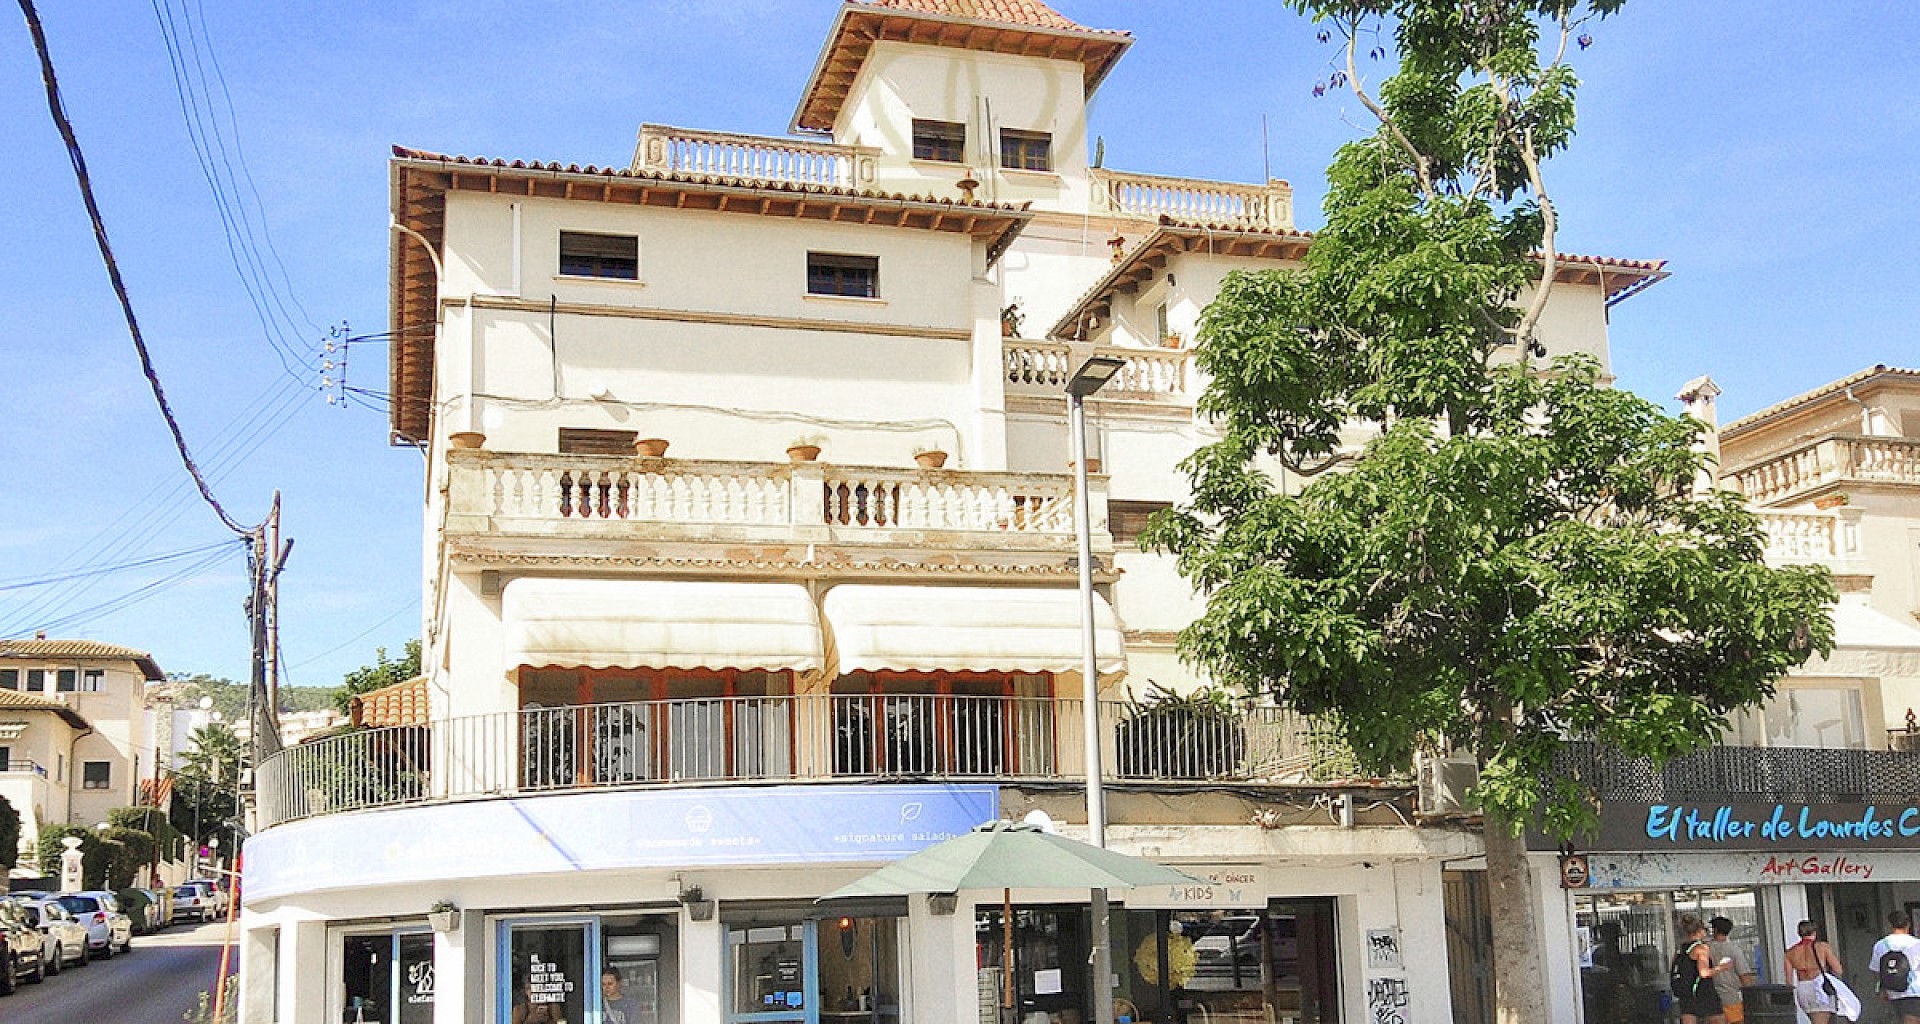 KROHN & LUEDEMANN Villa clásica en San Augustin como propiedad de inversión San Augustin Villa als Projekt